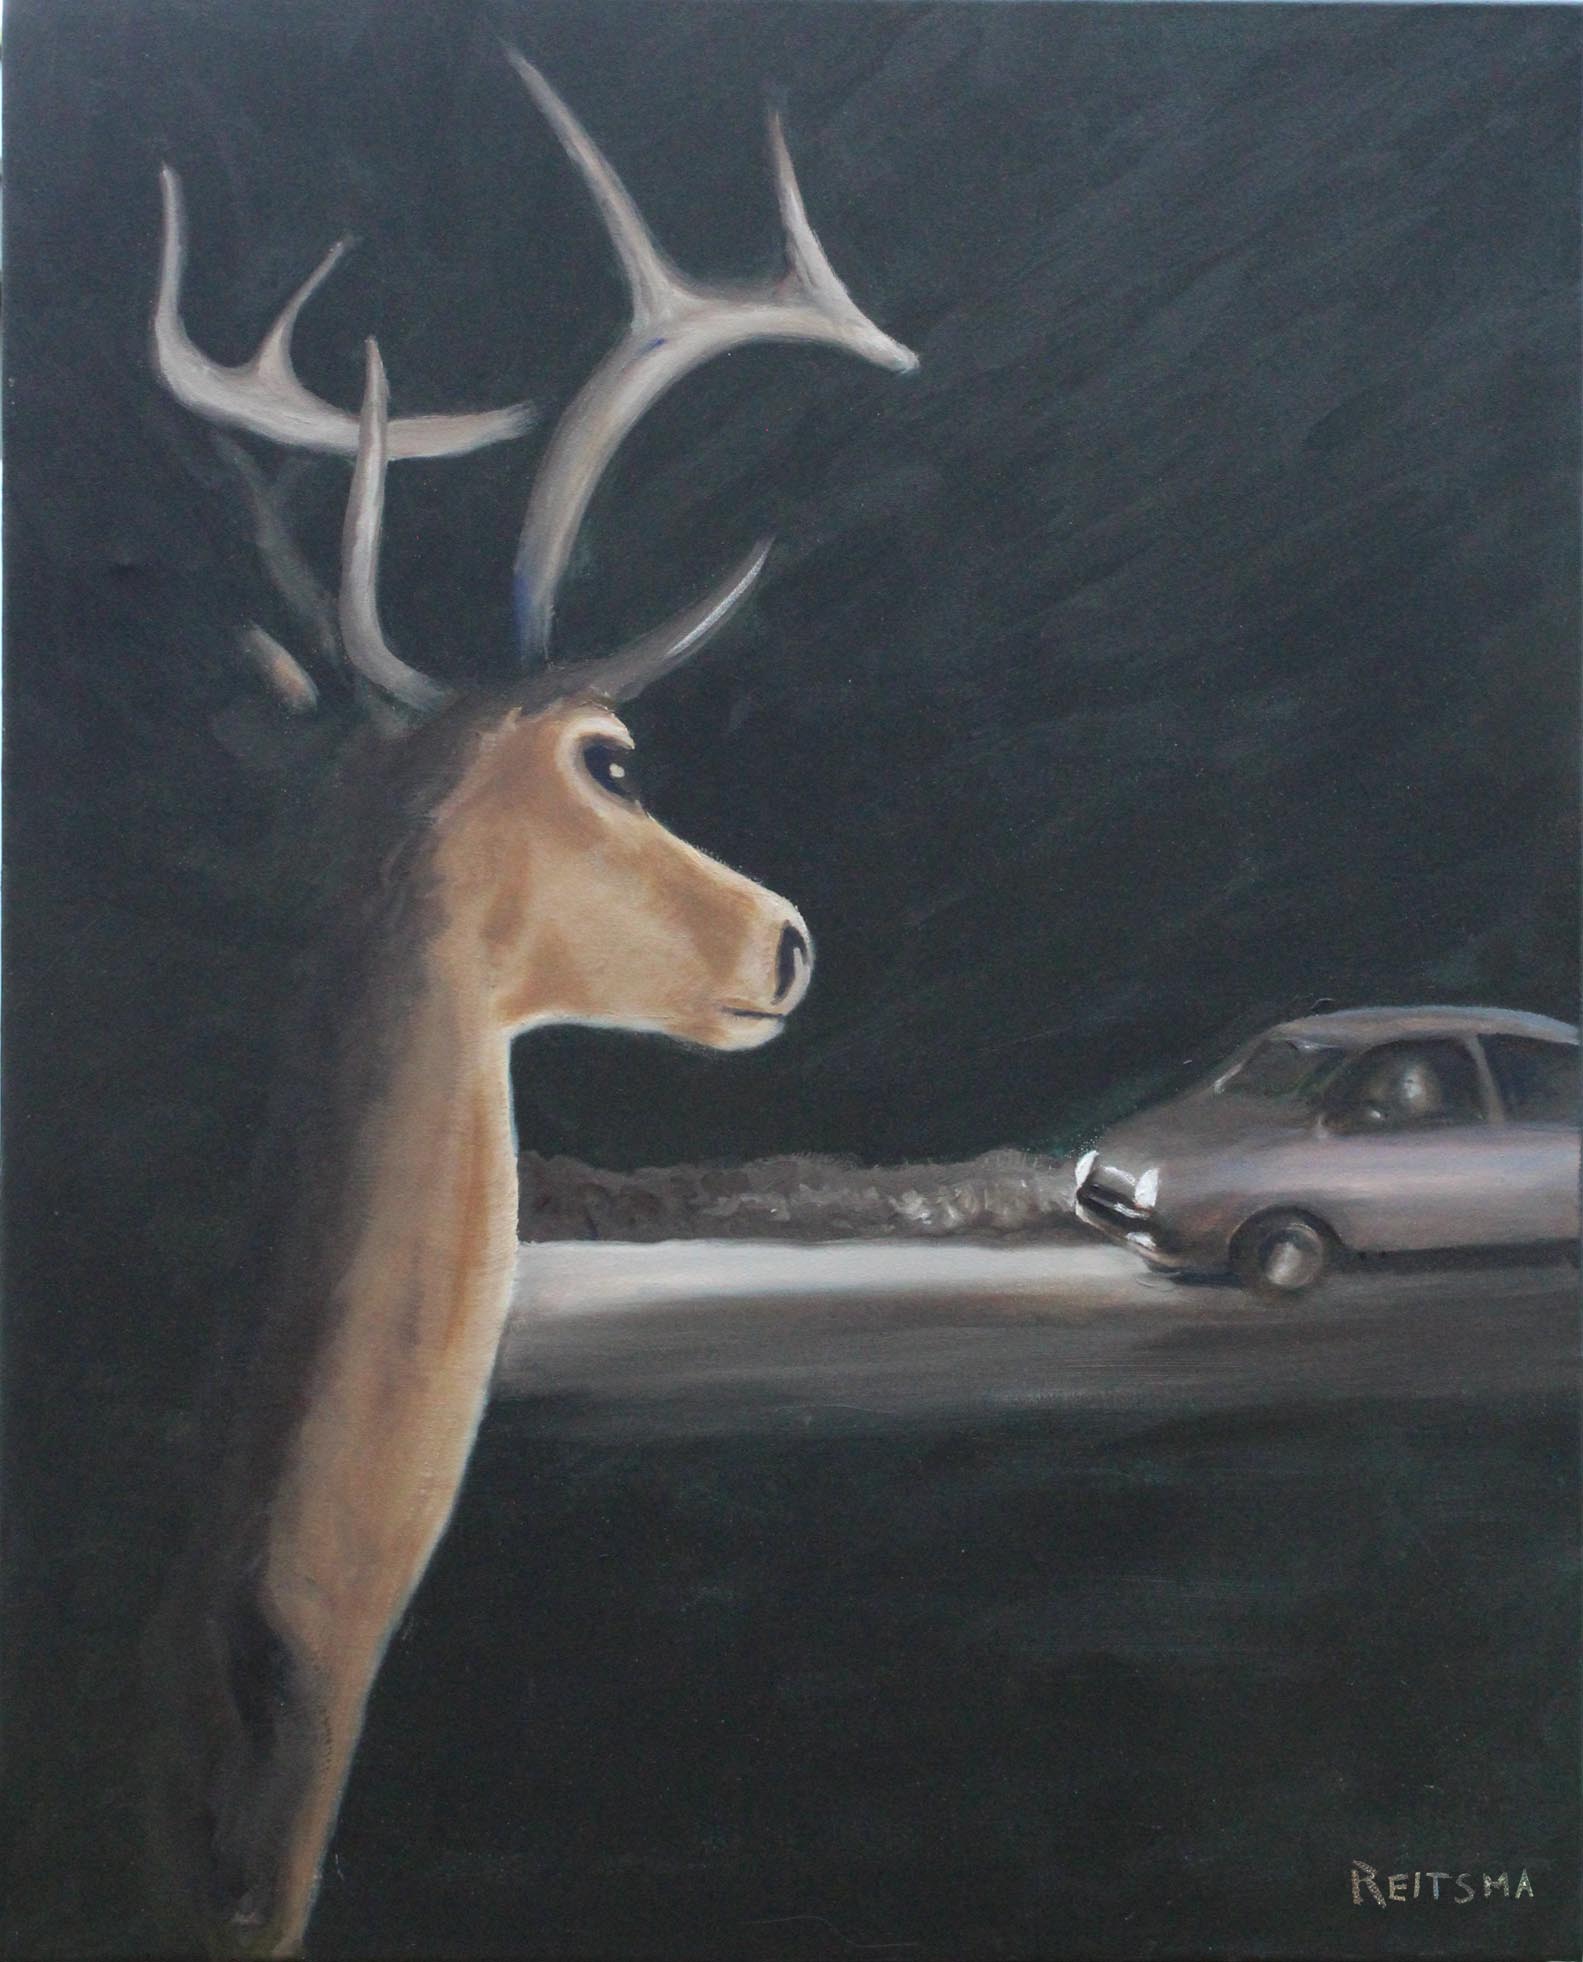 Deer Road Incidents